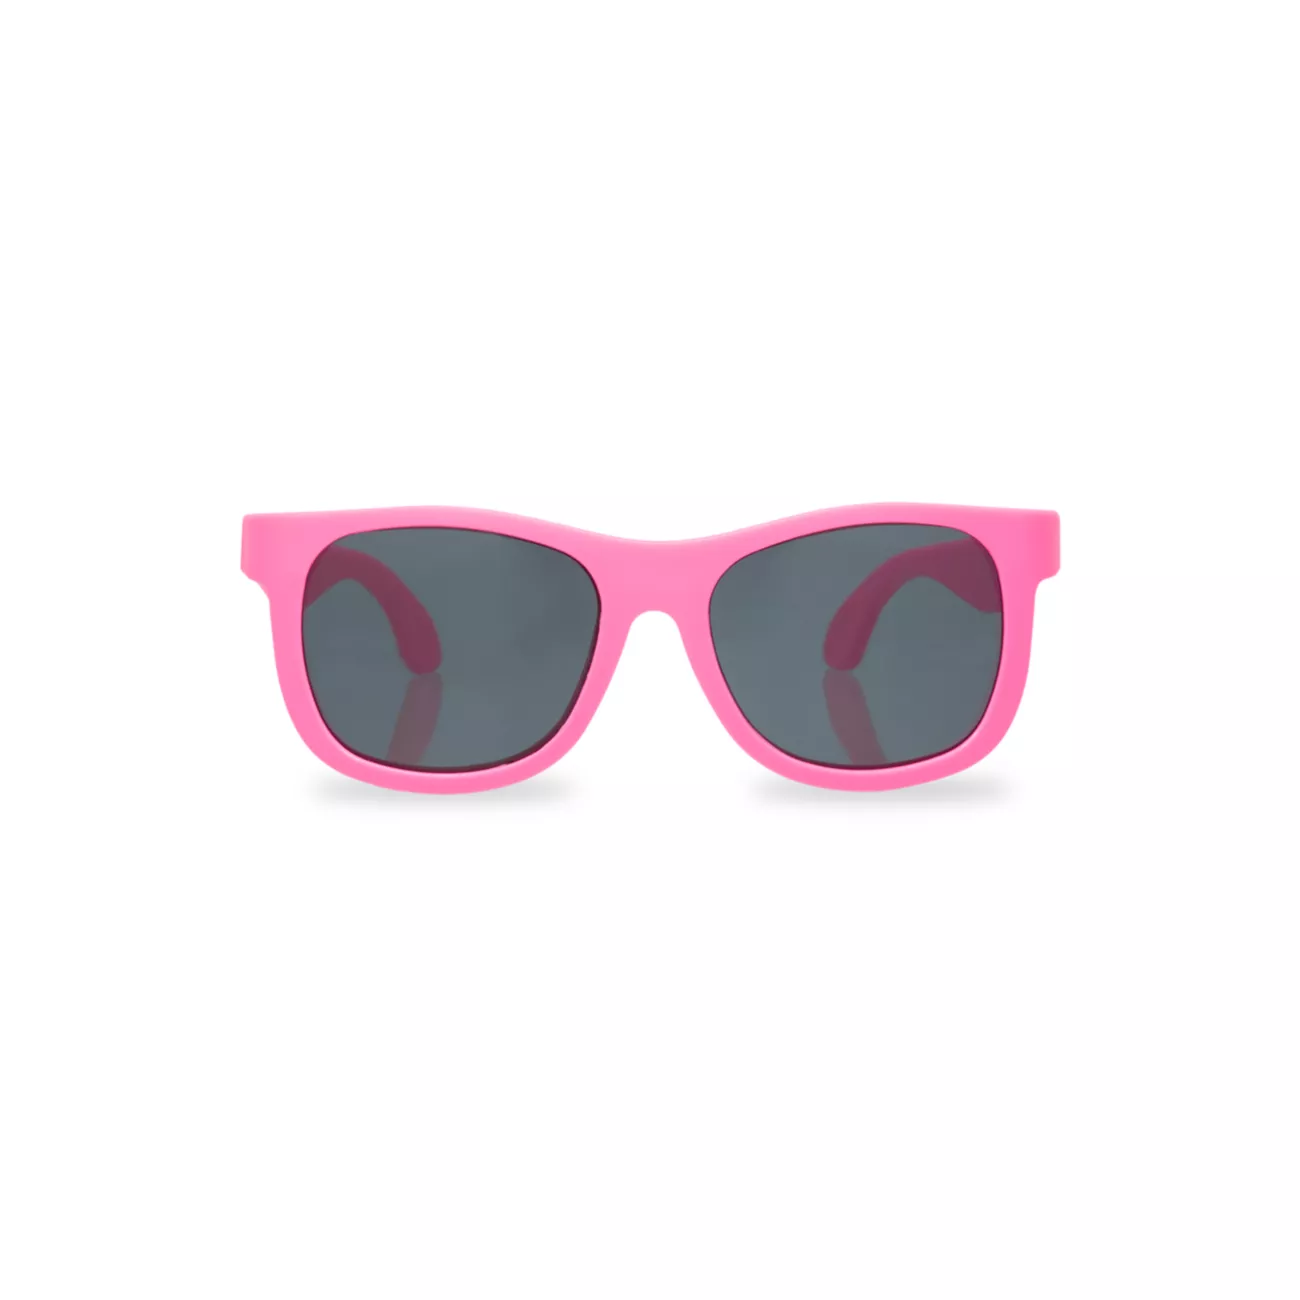 Оригинальные солнцезащитные очки-навигатор Babiators